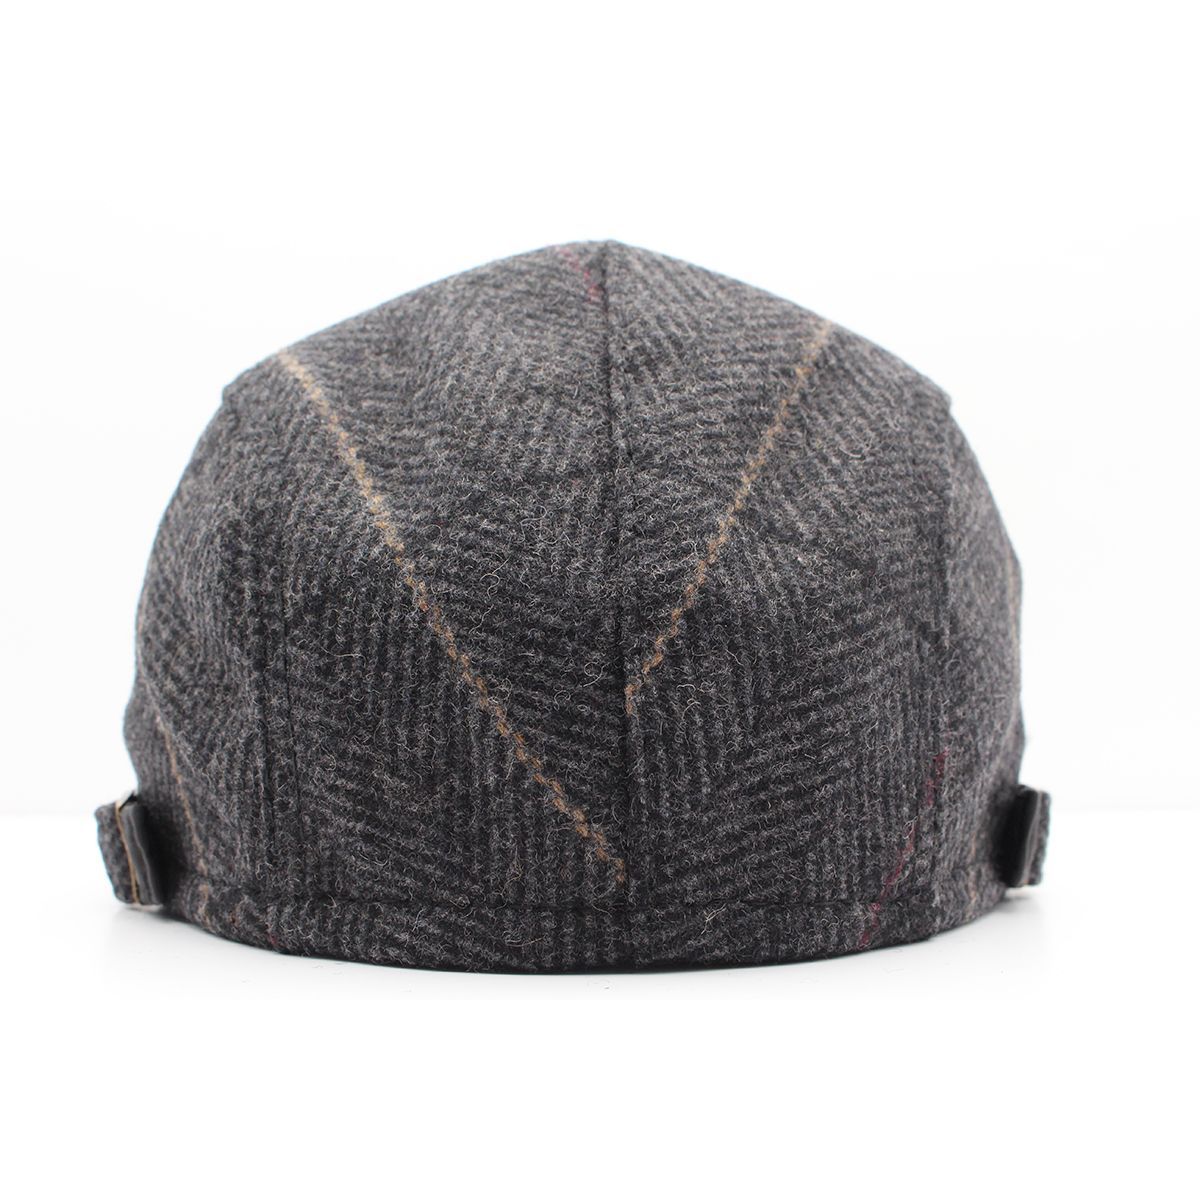 ハンチング帽子 杢柄 ヘリボーン ウール混 パッチワーク 帽子・キャップ 56cm~58cm HC128-1